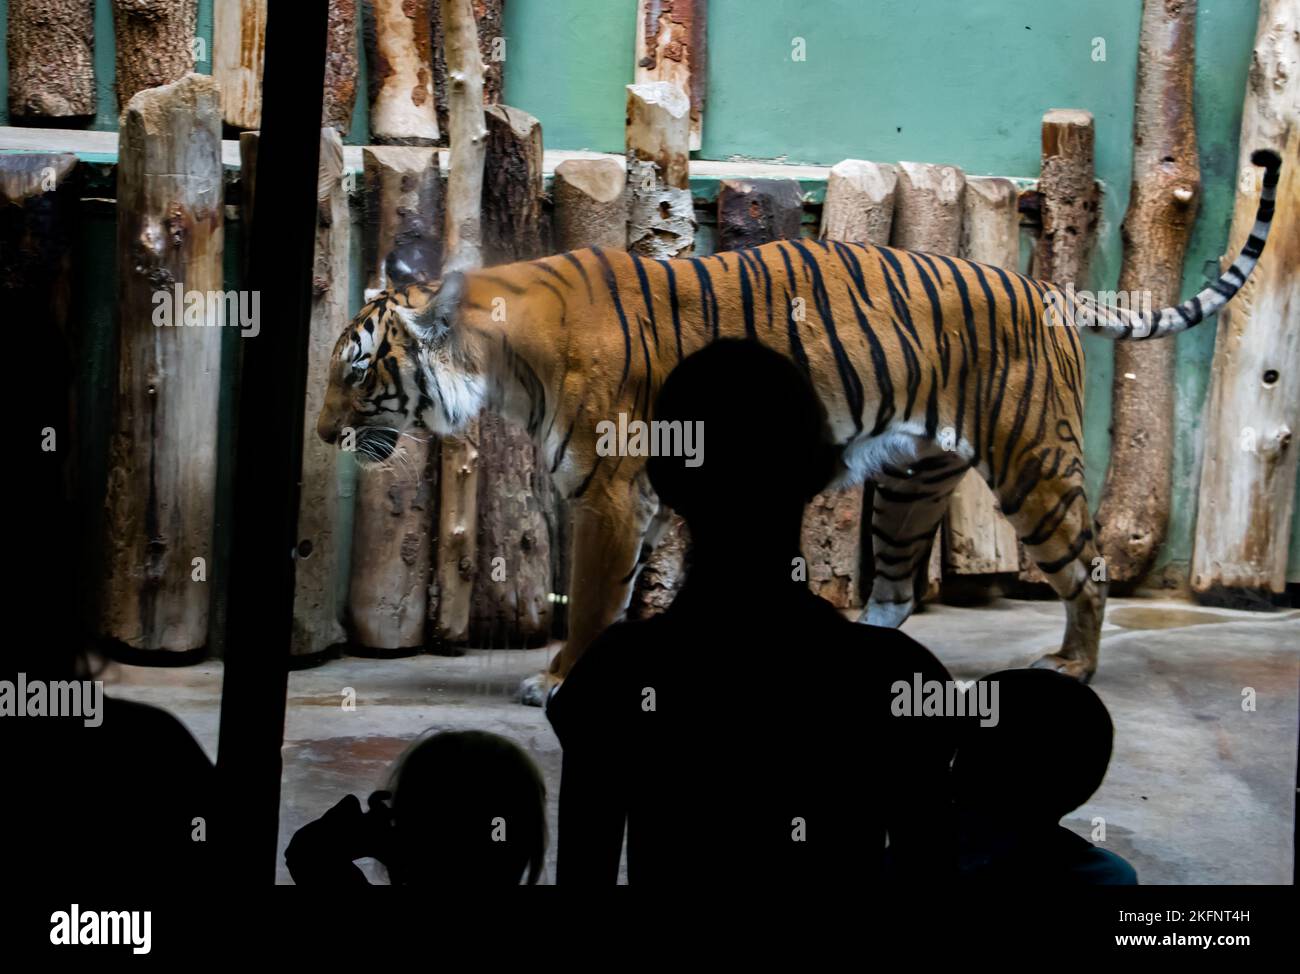 Ein Besucher im Zoo beobachtet einen Tiger in einem Käfig Stockfoto